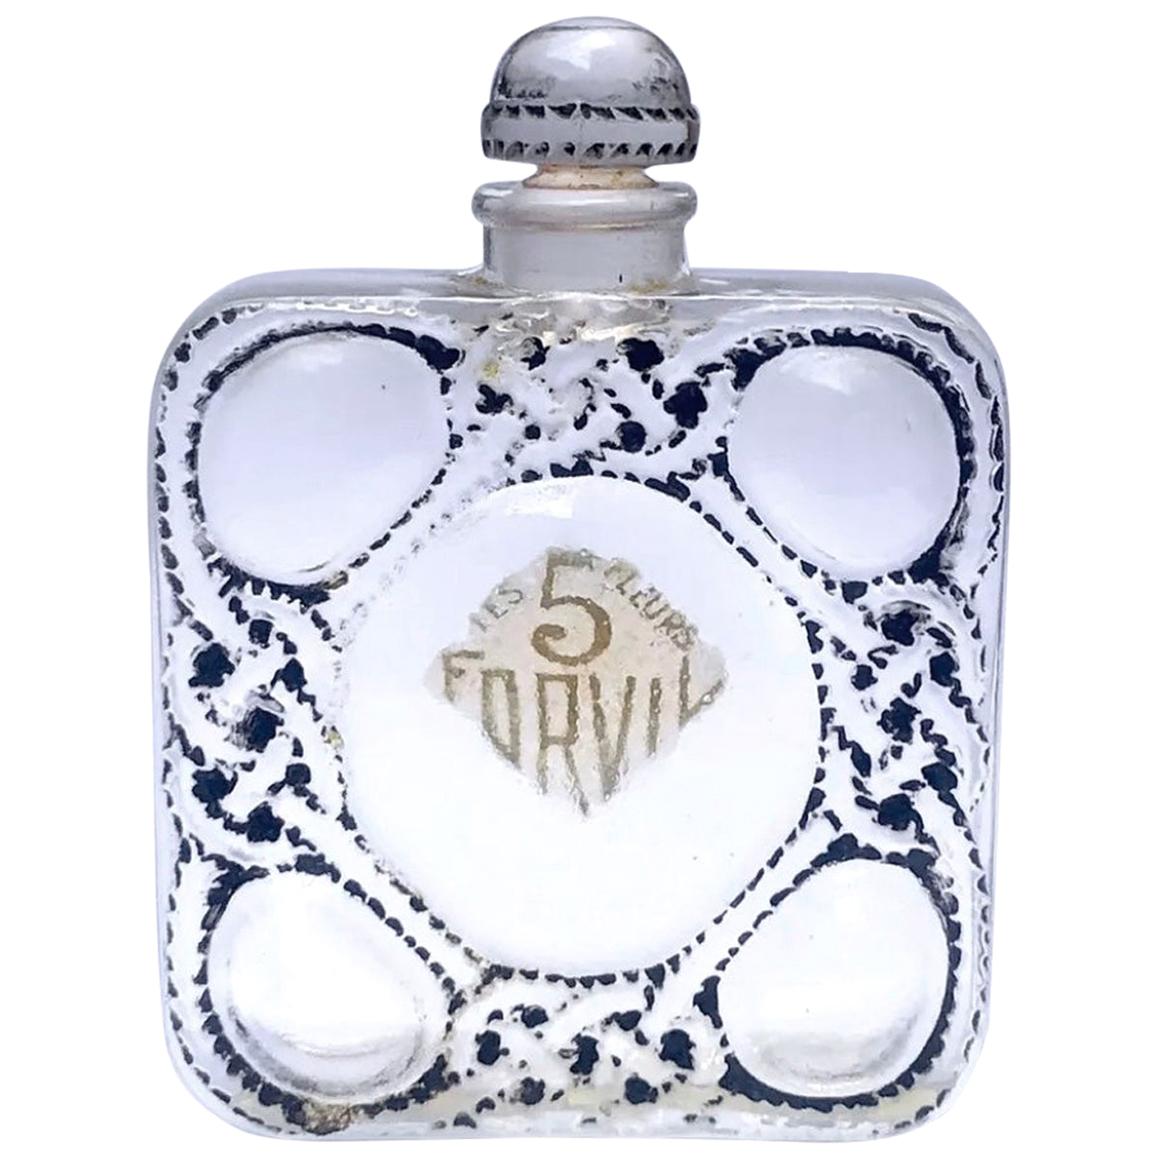 1926 Rene Lalique Les Cinq Fleurs Perfume Bottle for Forvil Black Enameled Glass